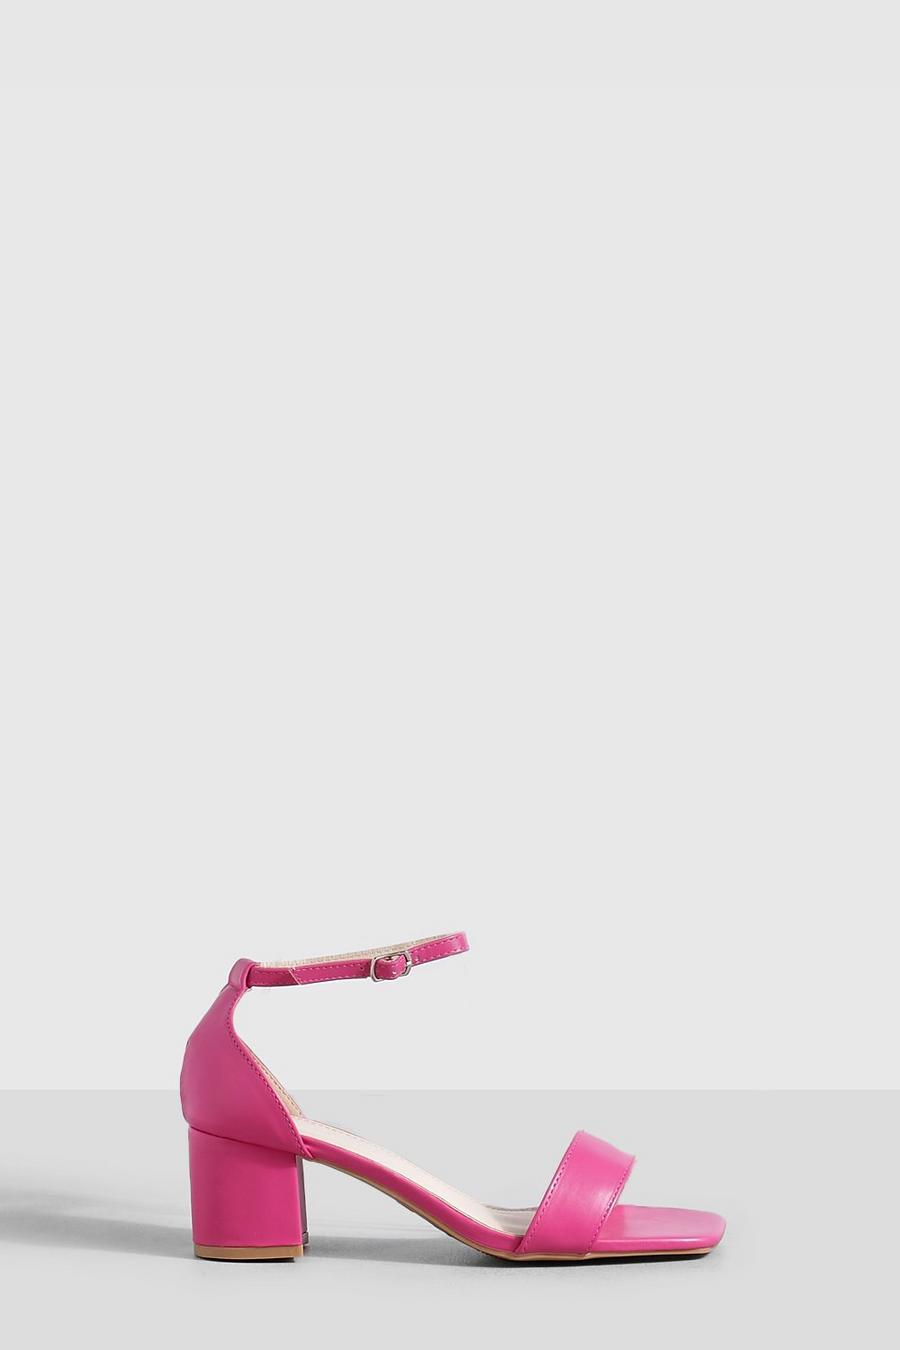 Tacones gruesos bajos de 2 partes minimalistas, Pink rosa